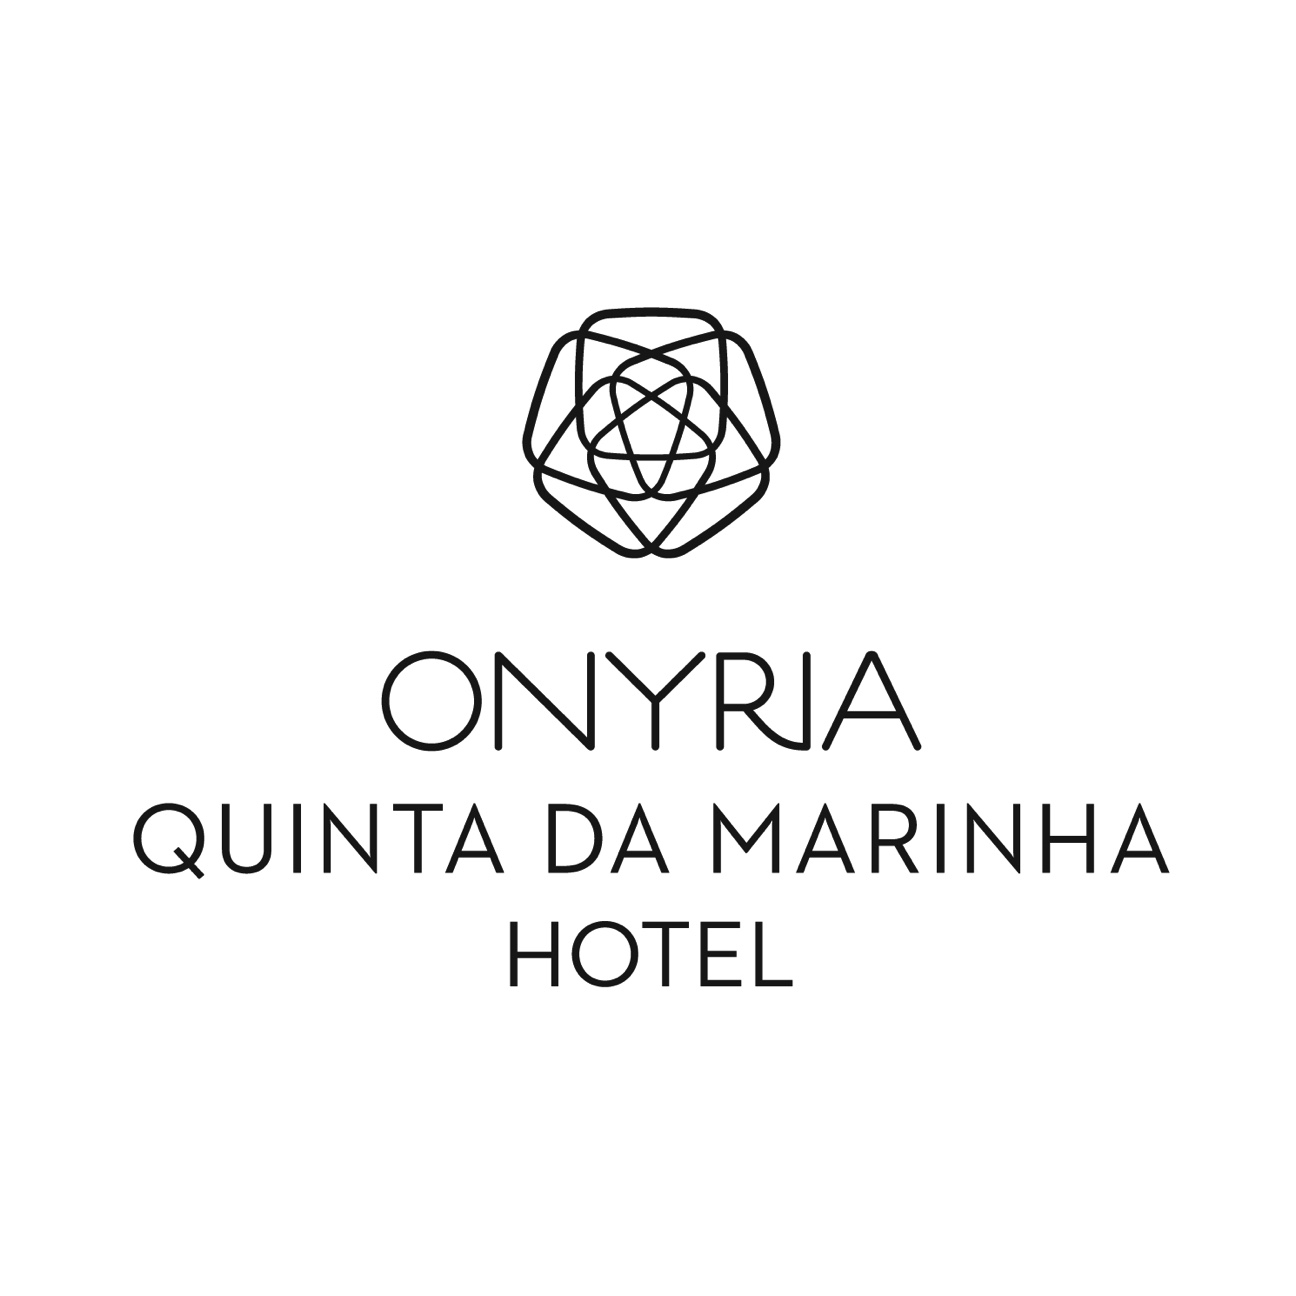 Image: Onyria Quinta Da Marinha